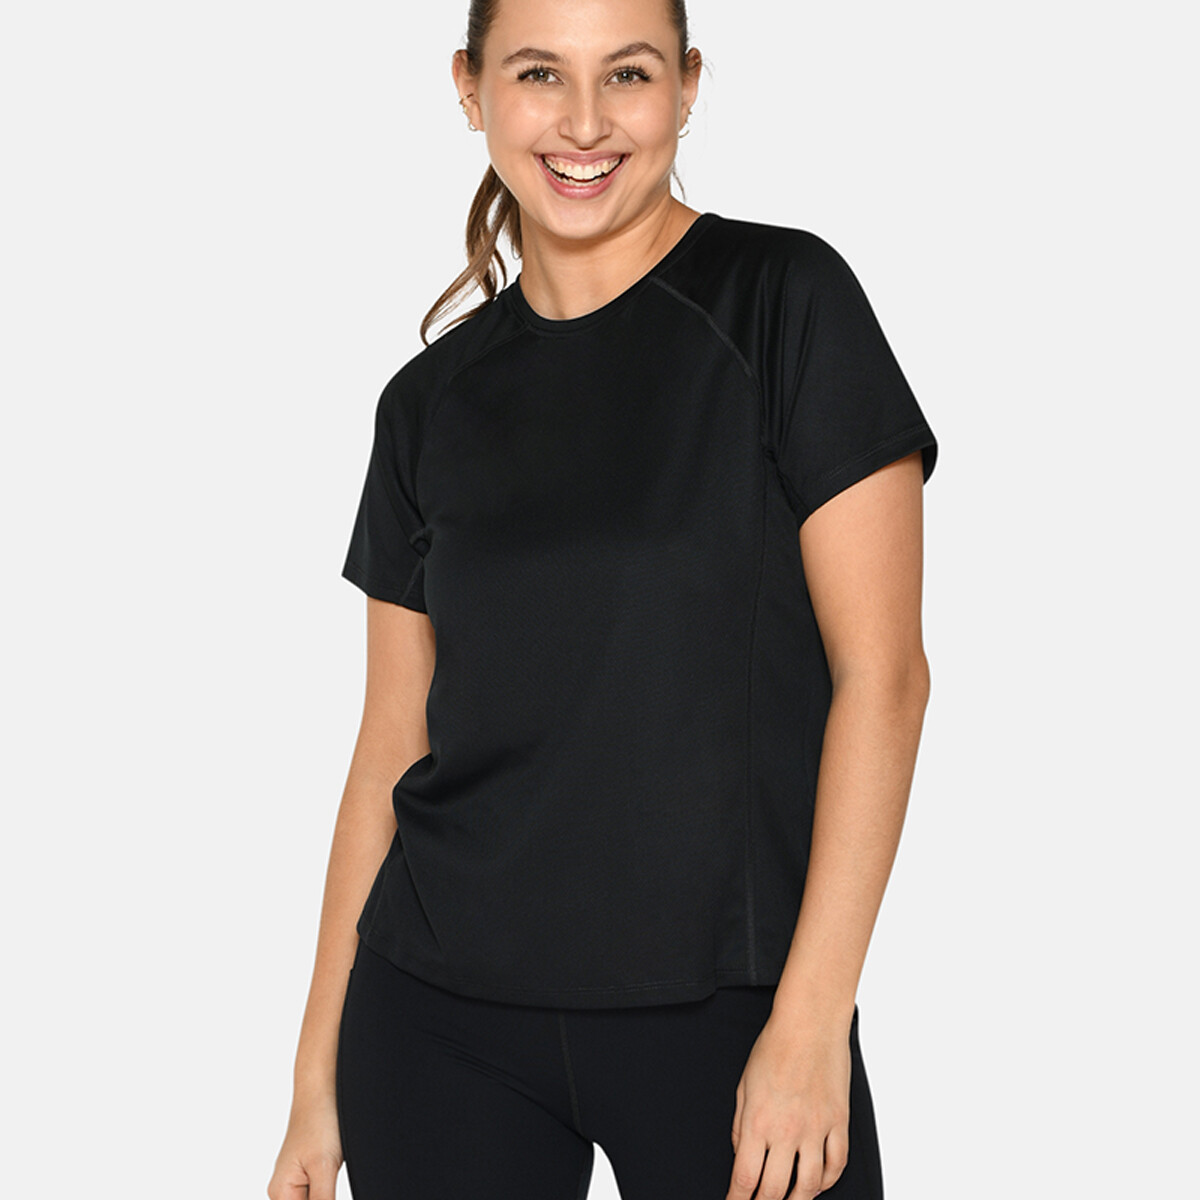 Se Zebdia Women Sports T-shirt, Farve: Sort, Størrelse: XL, Dame hos Netlingeri.dk